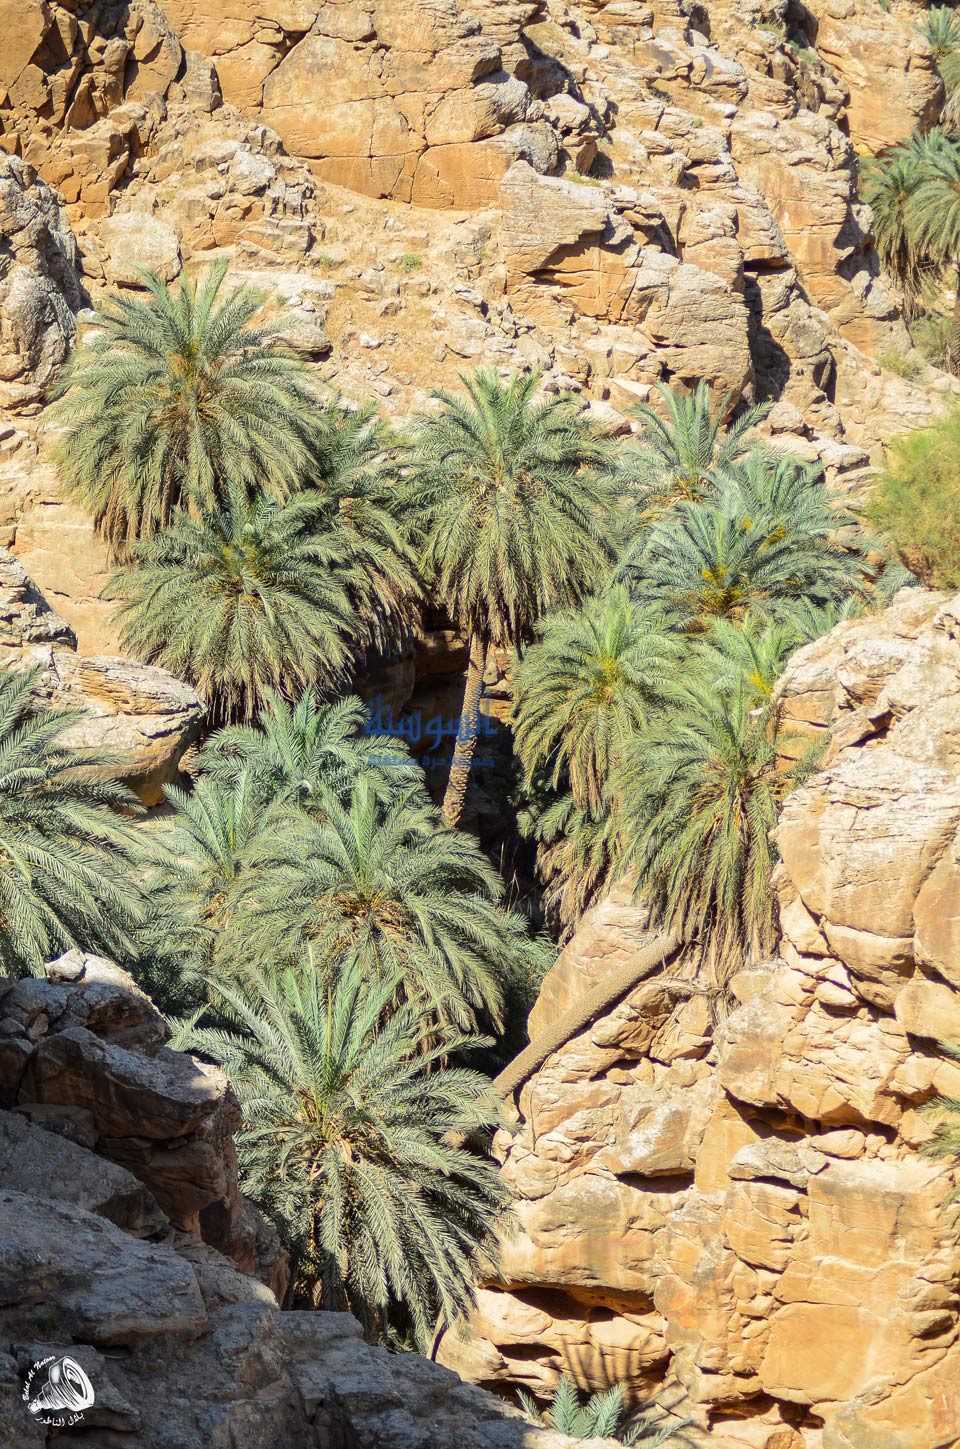 البلح ينتشر بكثرة في اودية البحر الميت